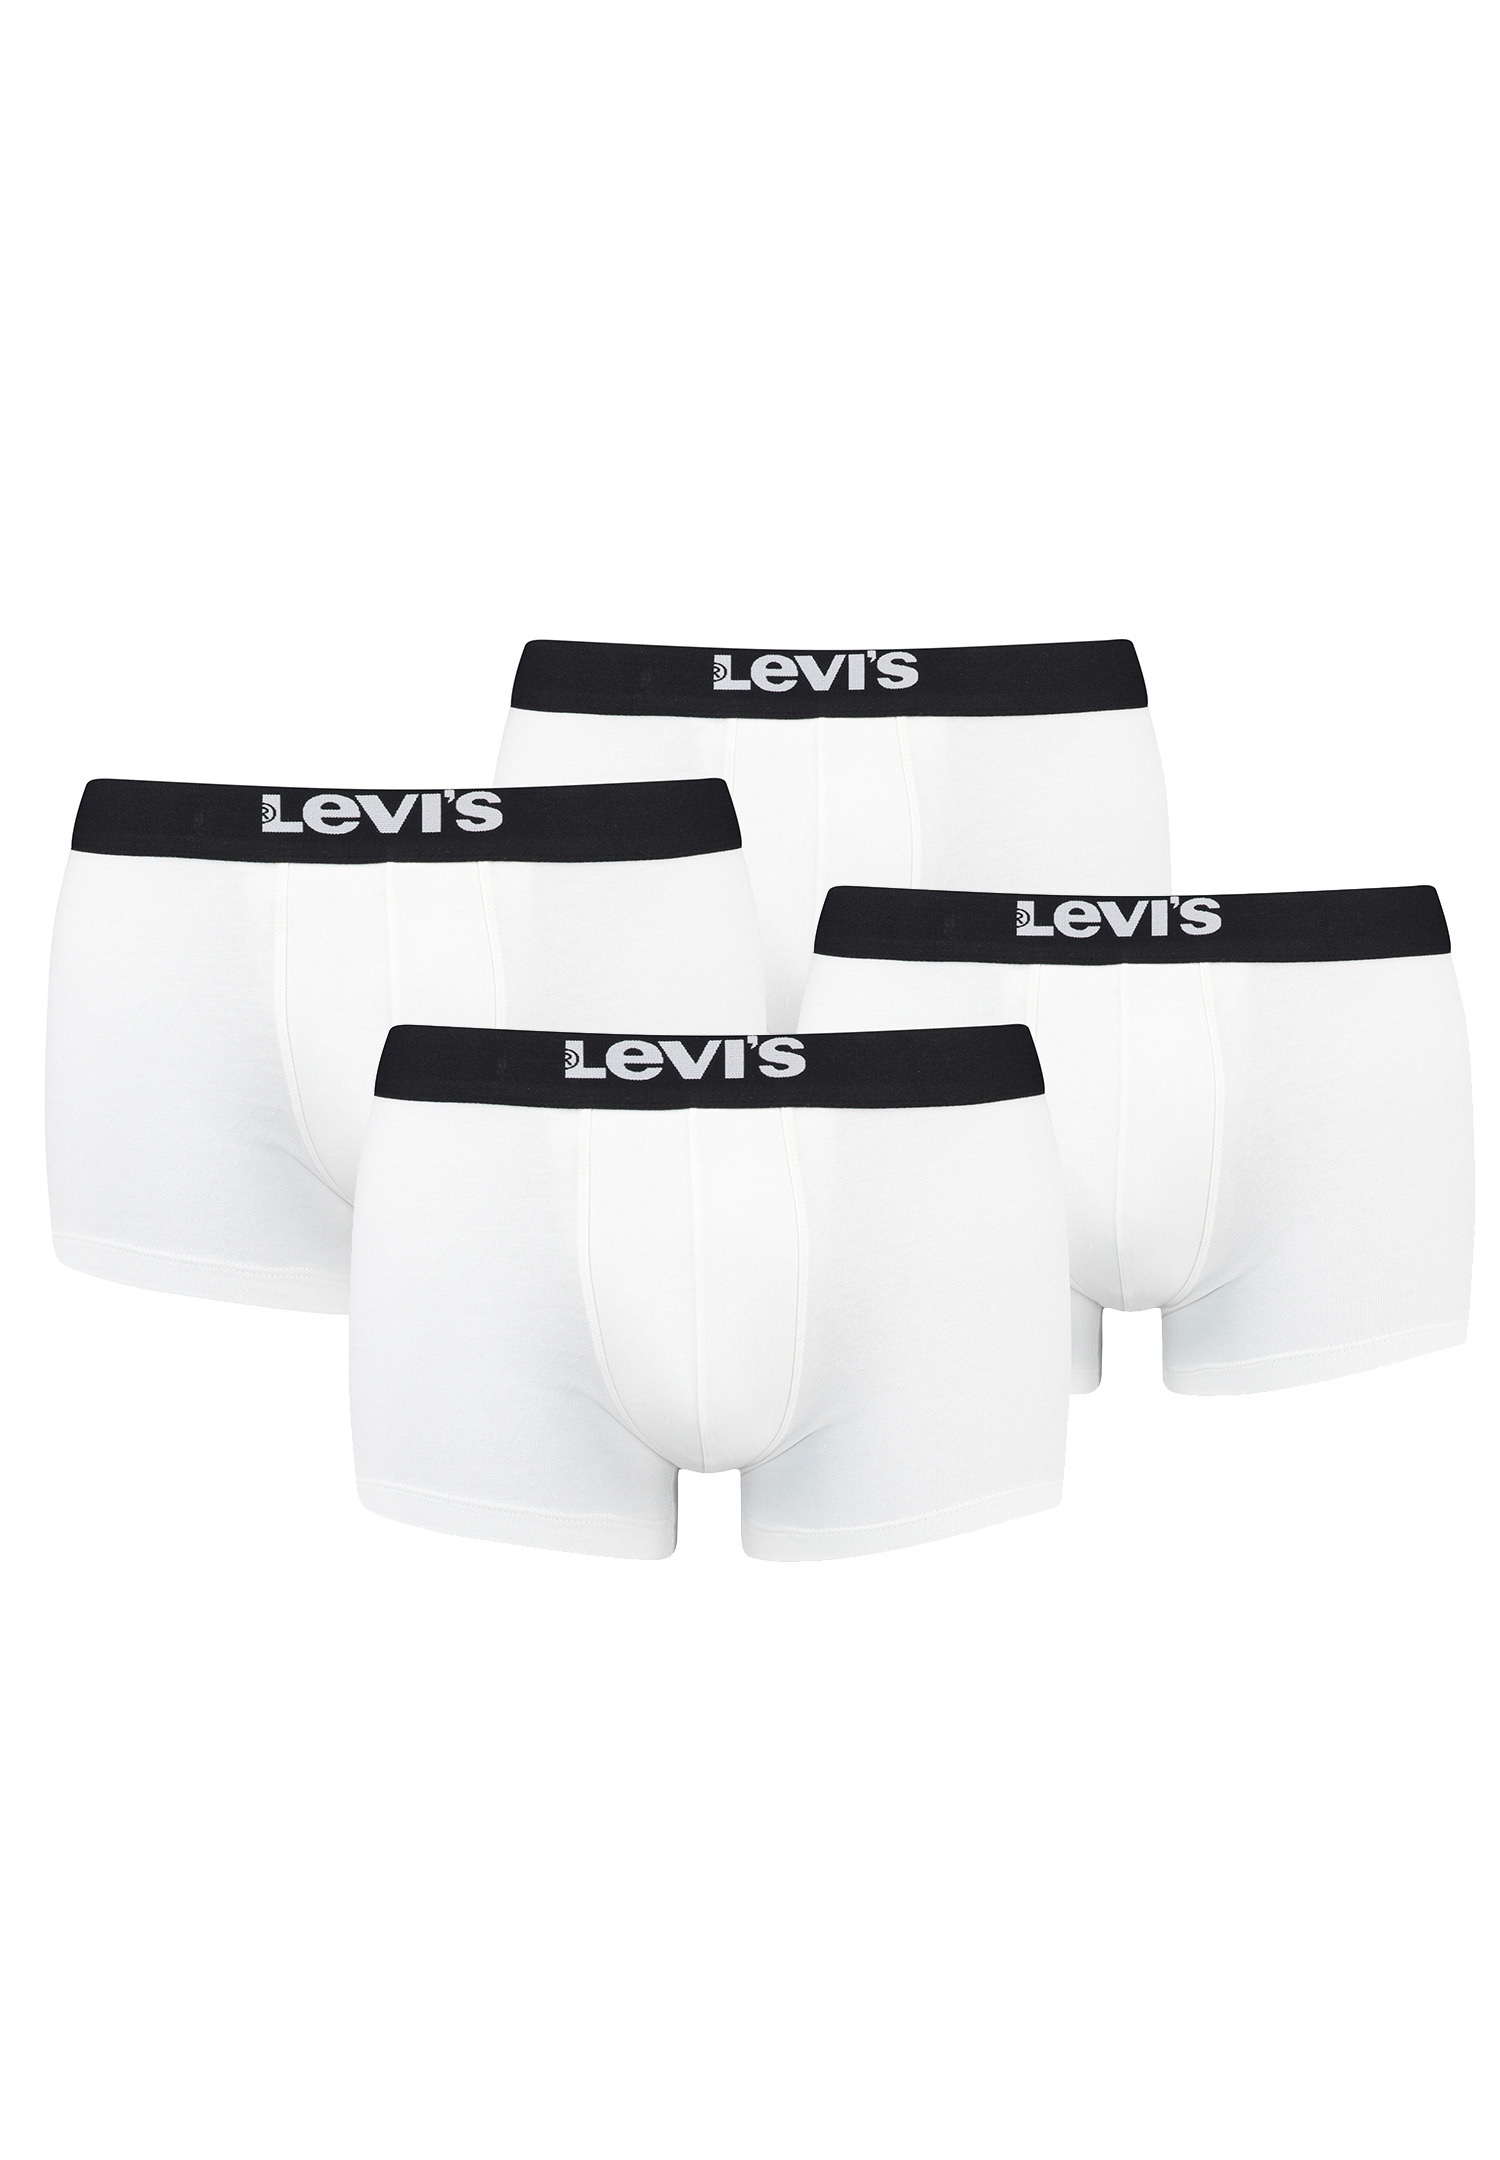 Levi's Solid Basic Herren Boxershorts Unterwäsche aus Bio-Baumwolle im 4er Pack